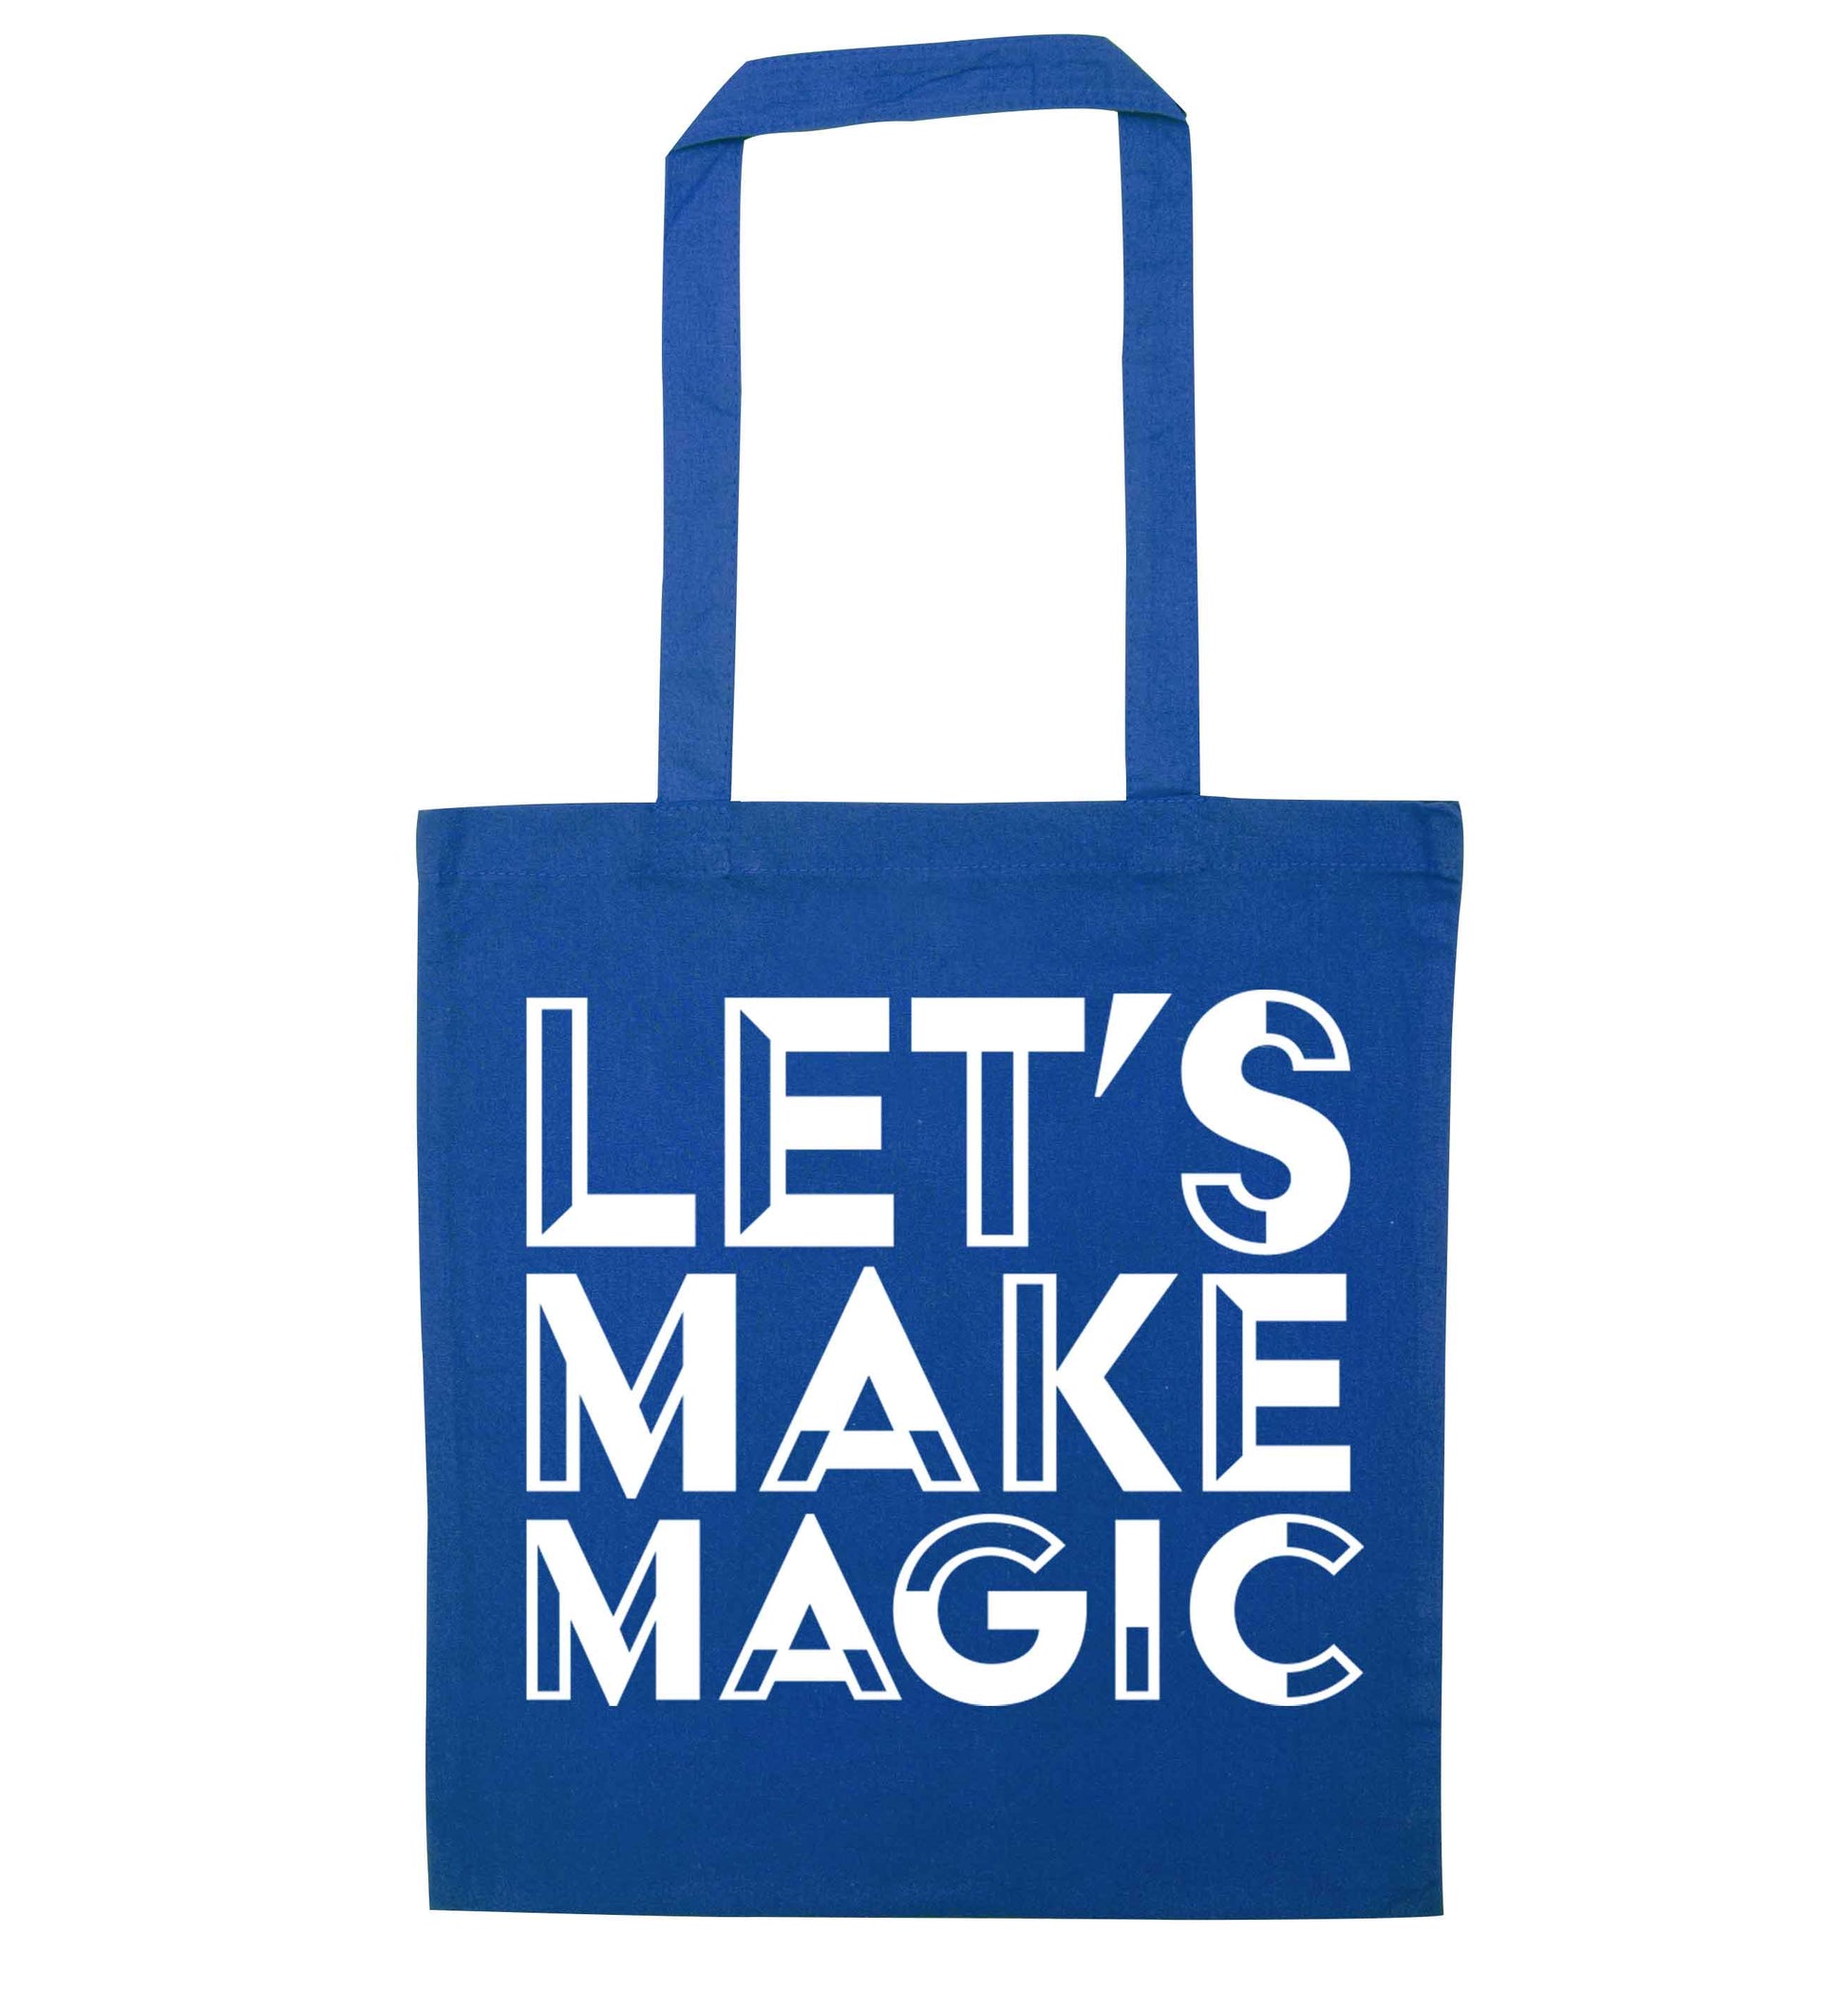 Let's make magic blue tote bag